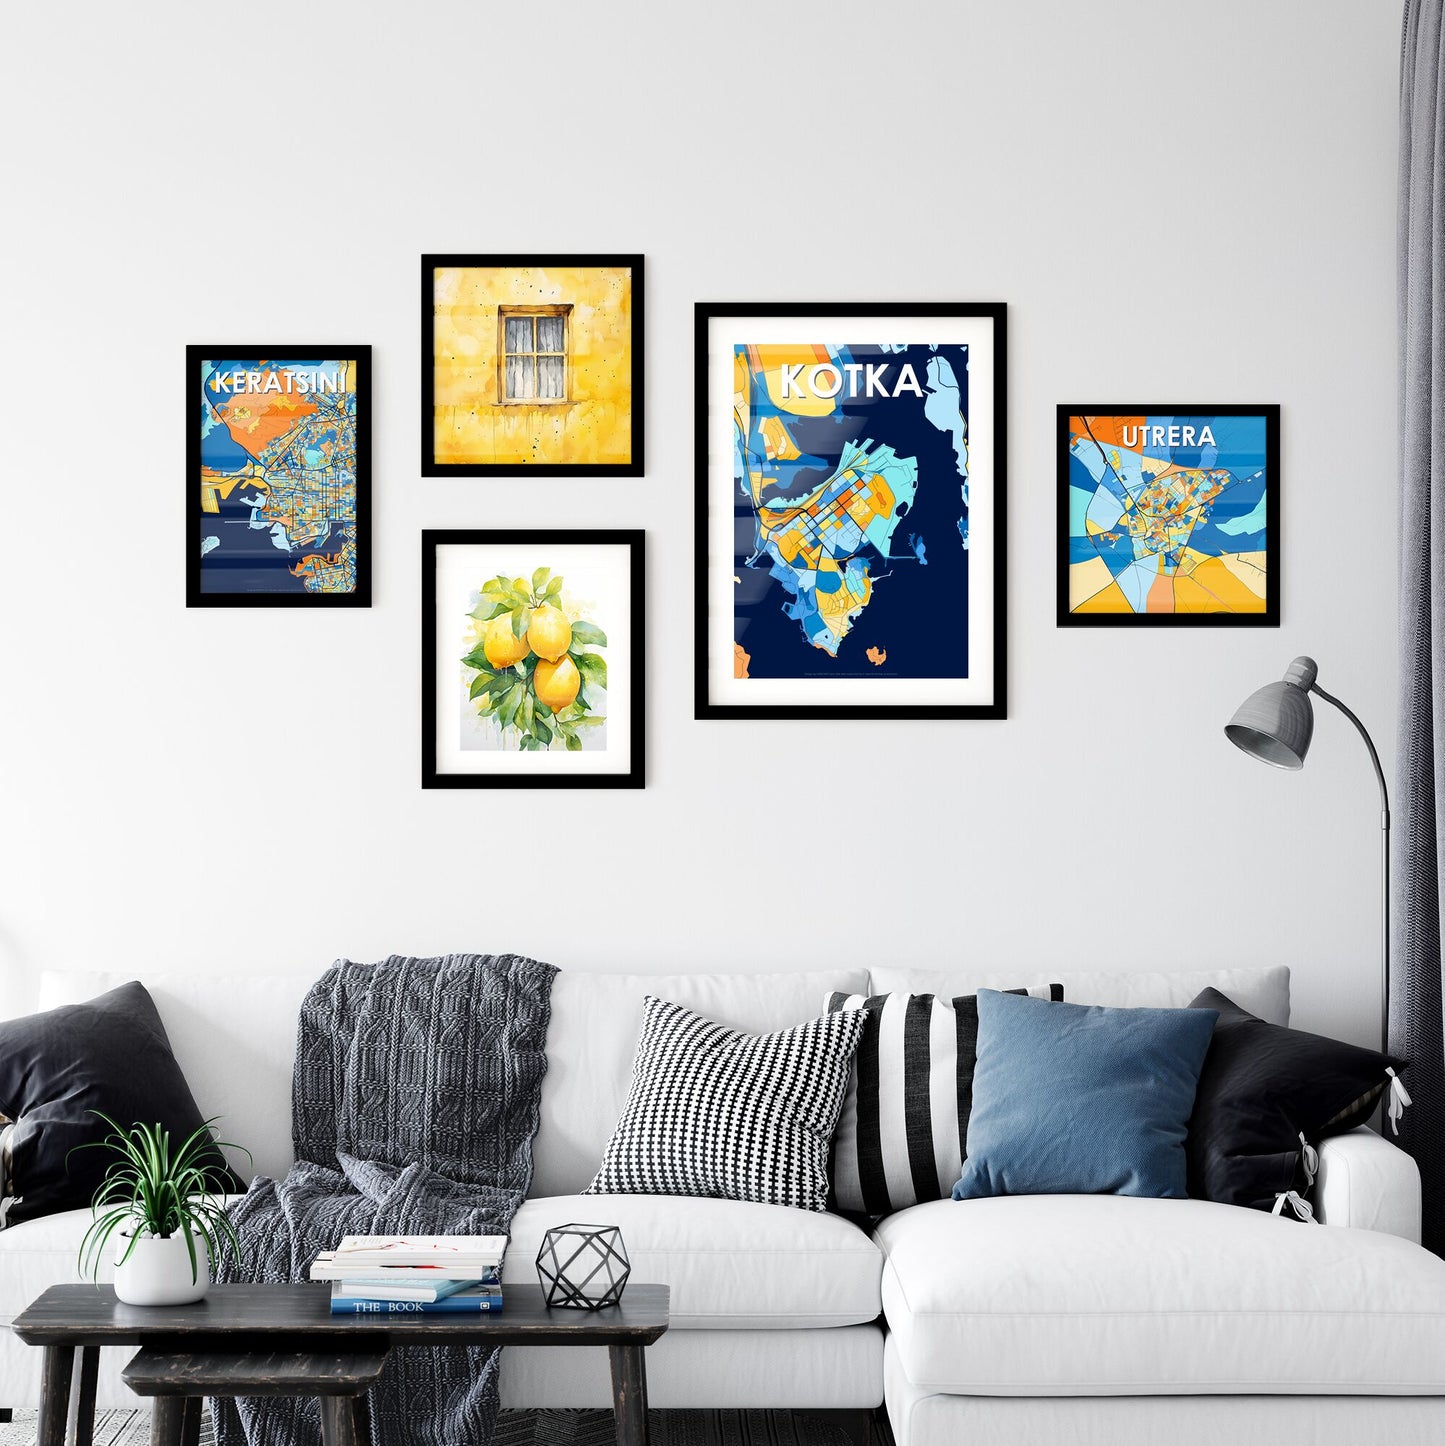 KOTKA FINLAND Vibrant Colorful Art Map Poster Blue Orange